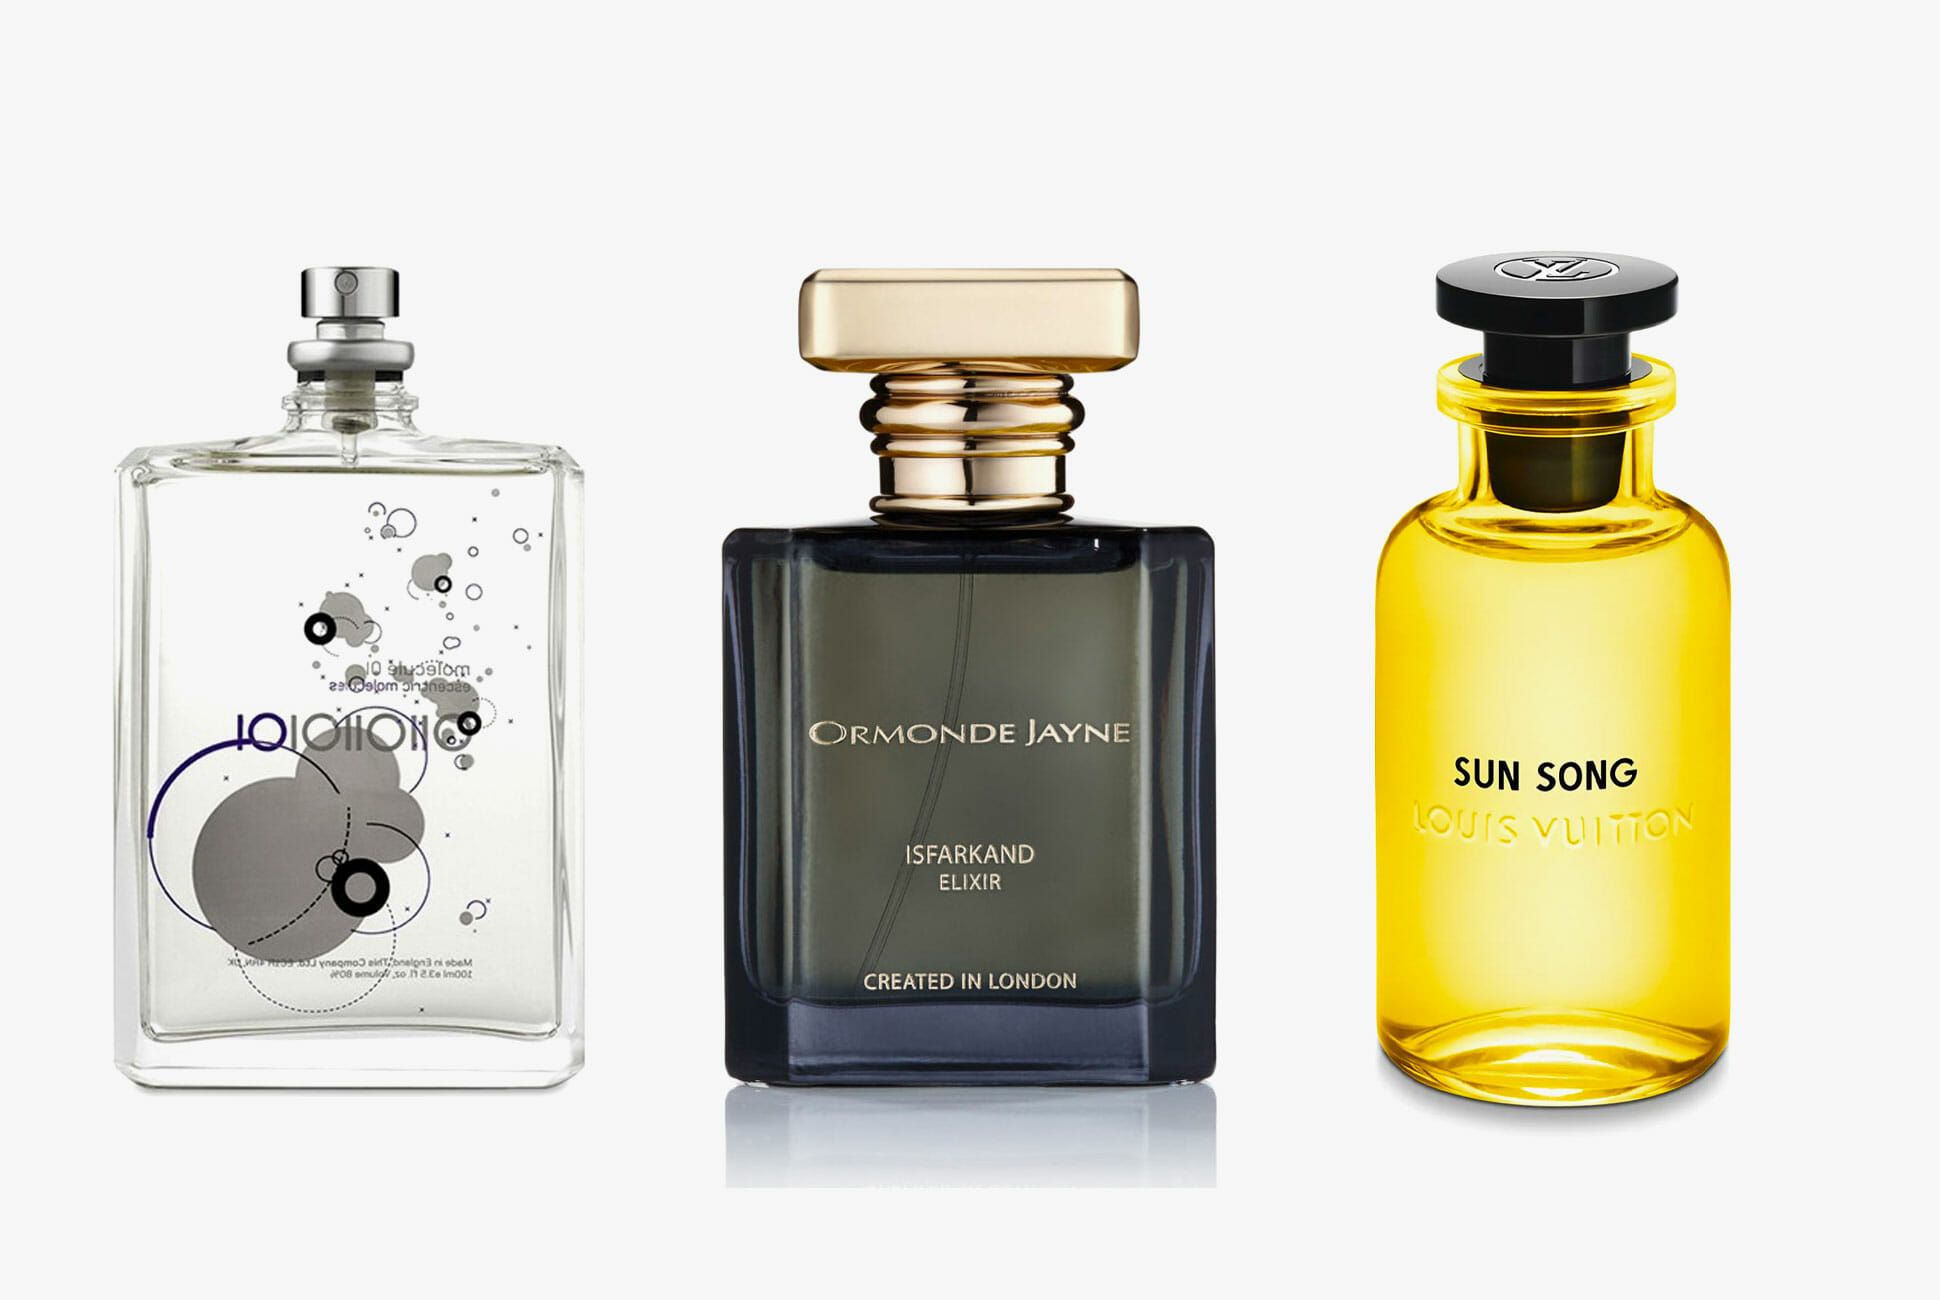 Best Deals for Louis Vuitton Perfume